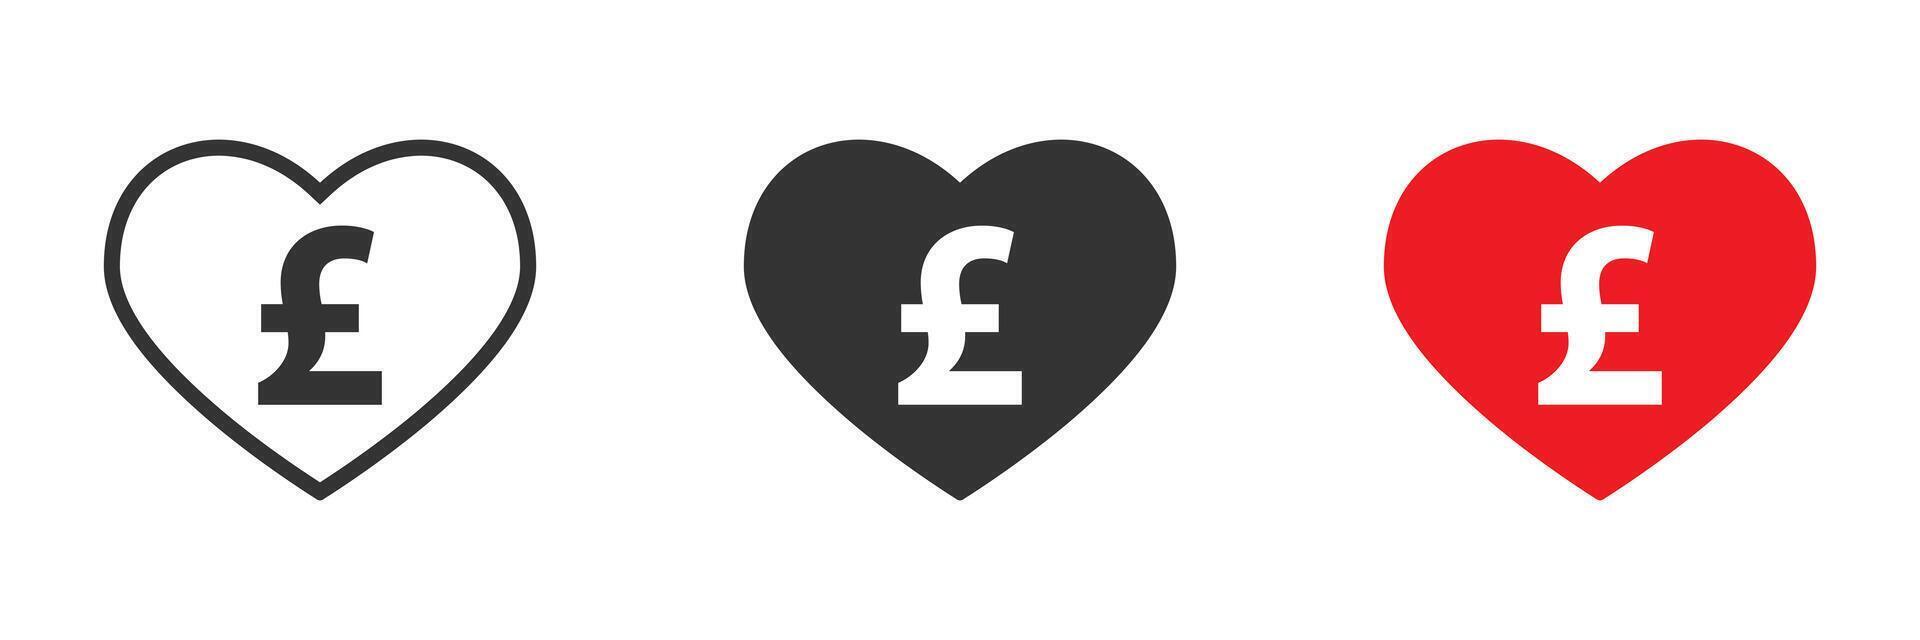 hart icoon met Brits valuta teken binnen. vector illustratie.